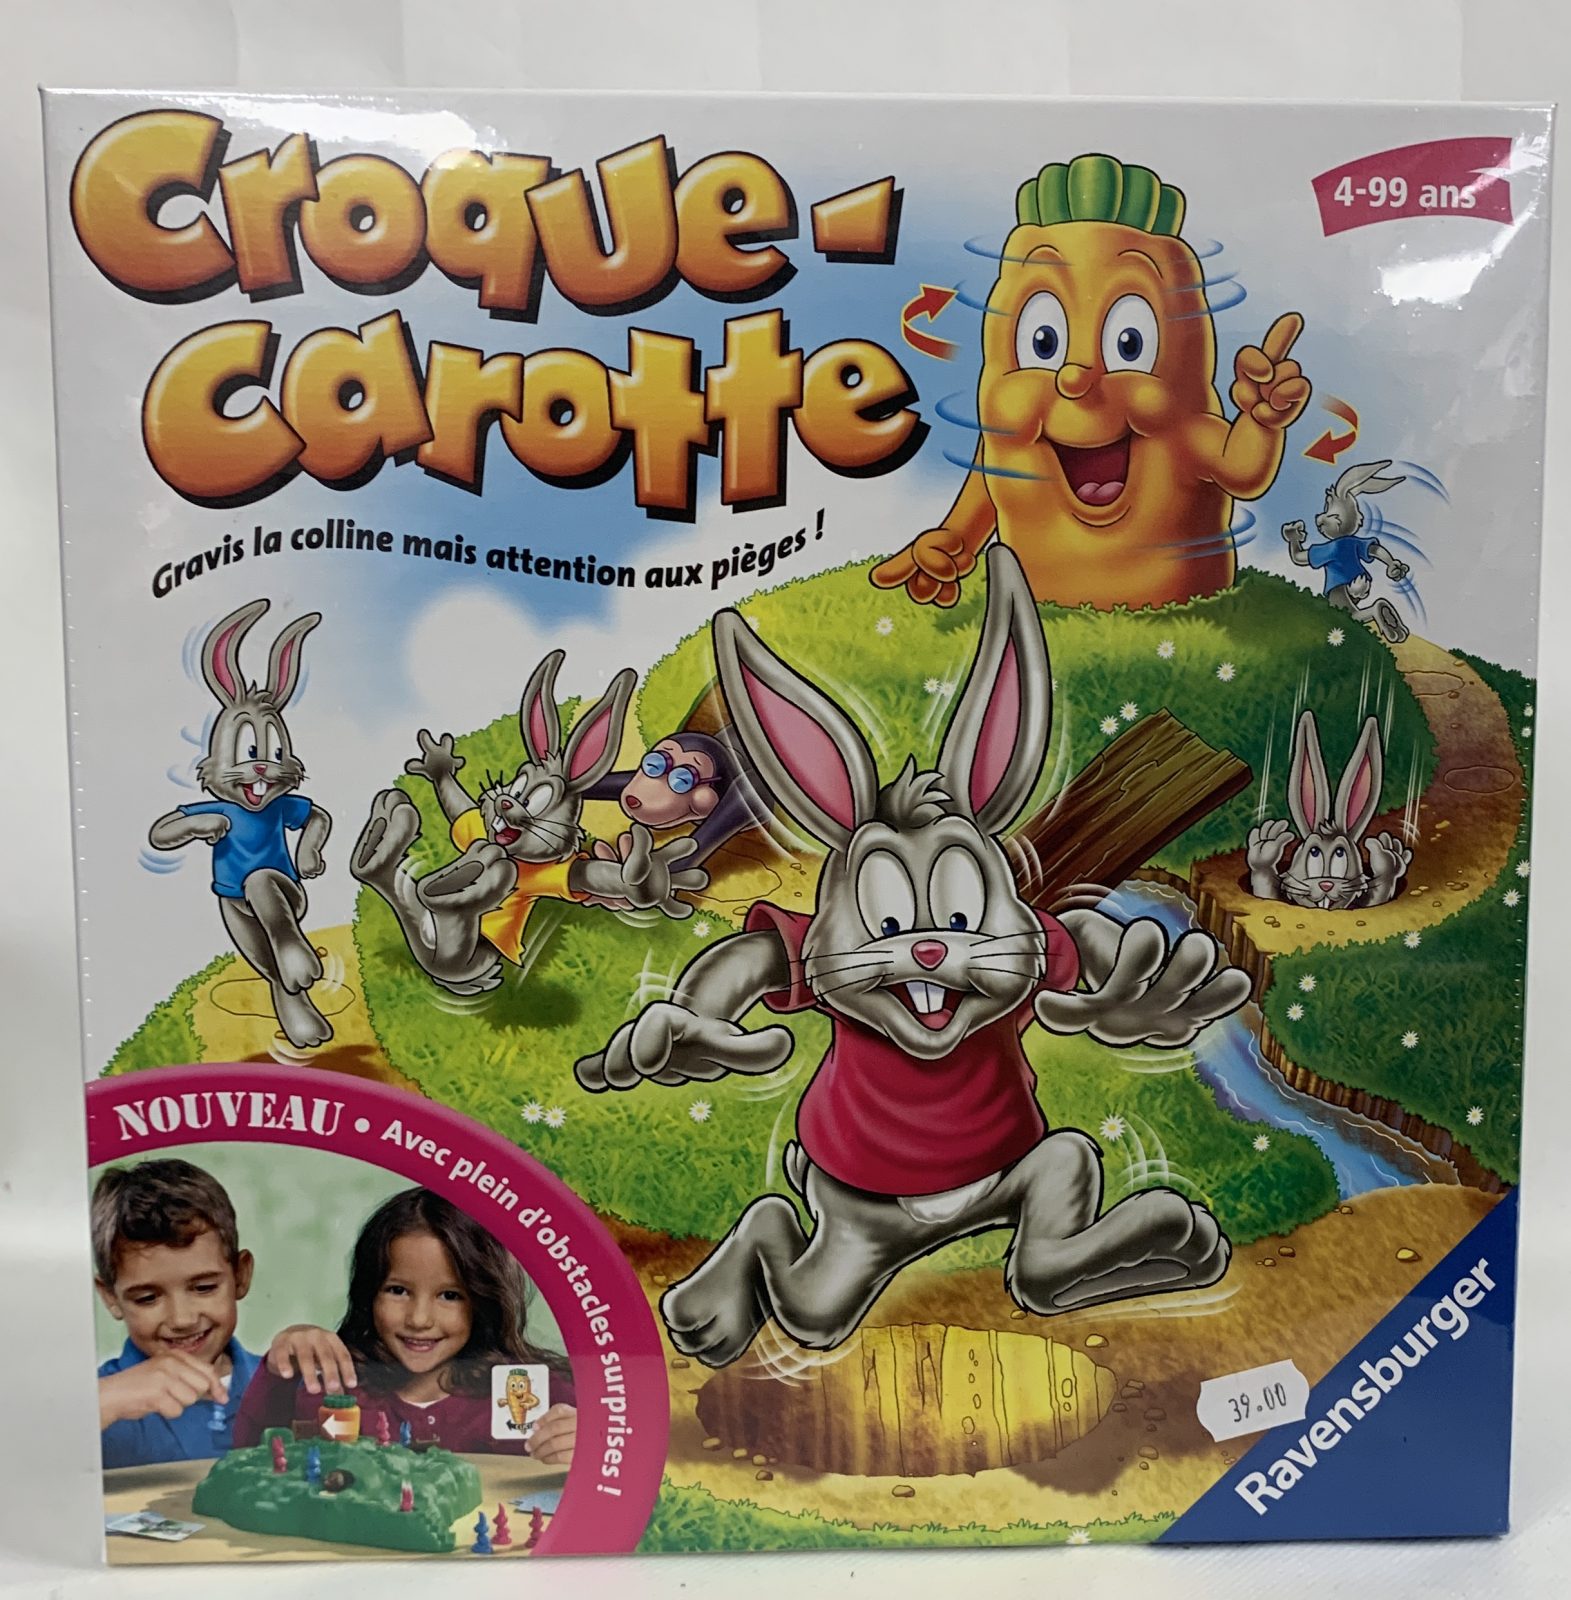 Croque-Carotte